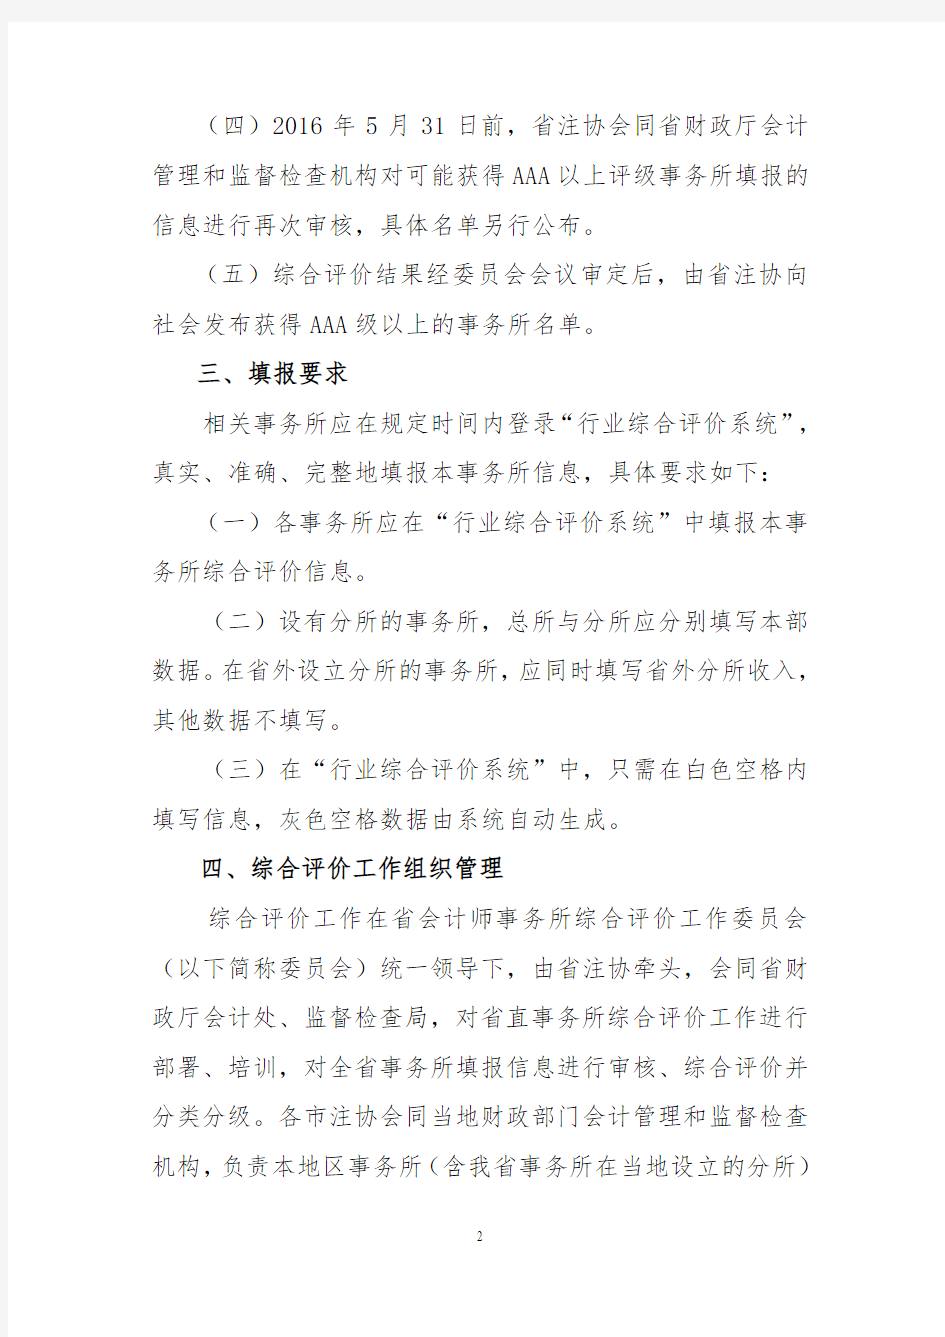 江苏会计师事务所综合评价制度-江苏注册会计师协会